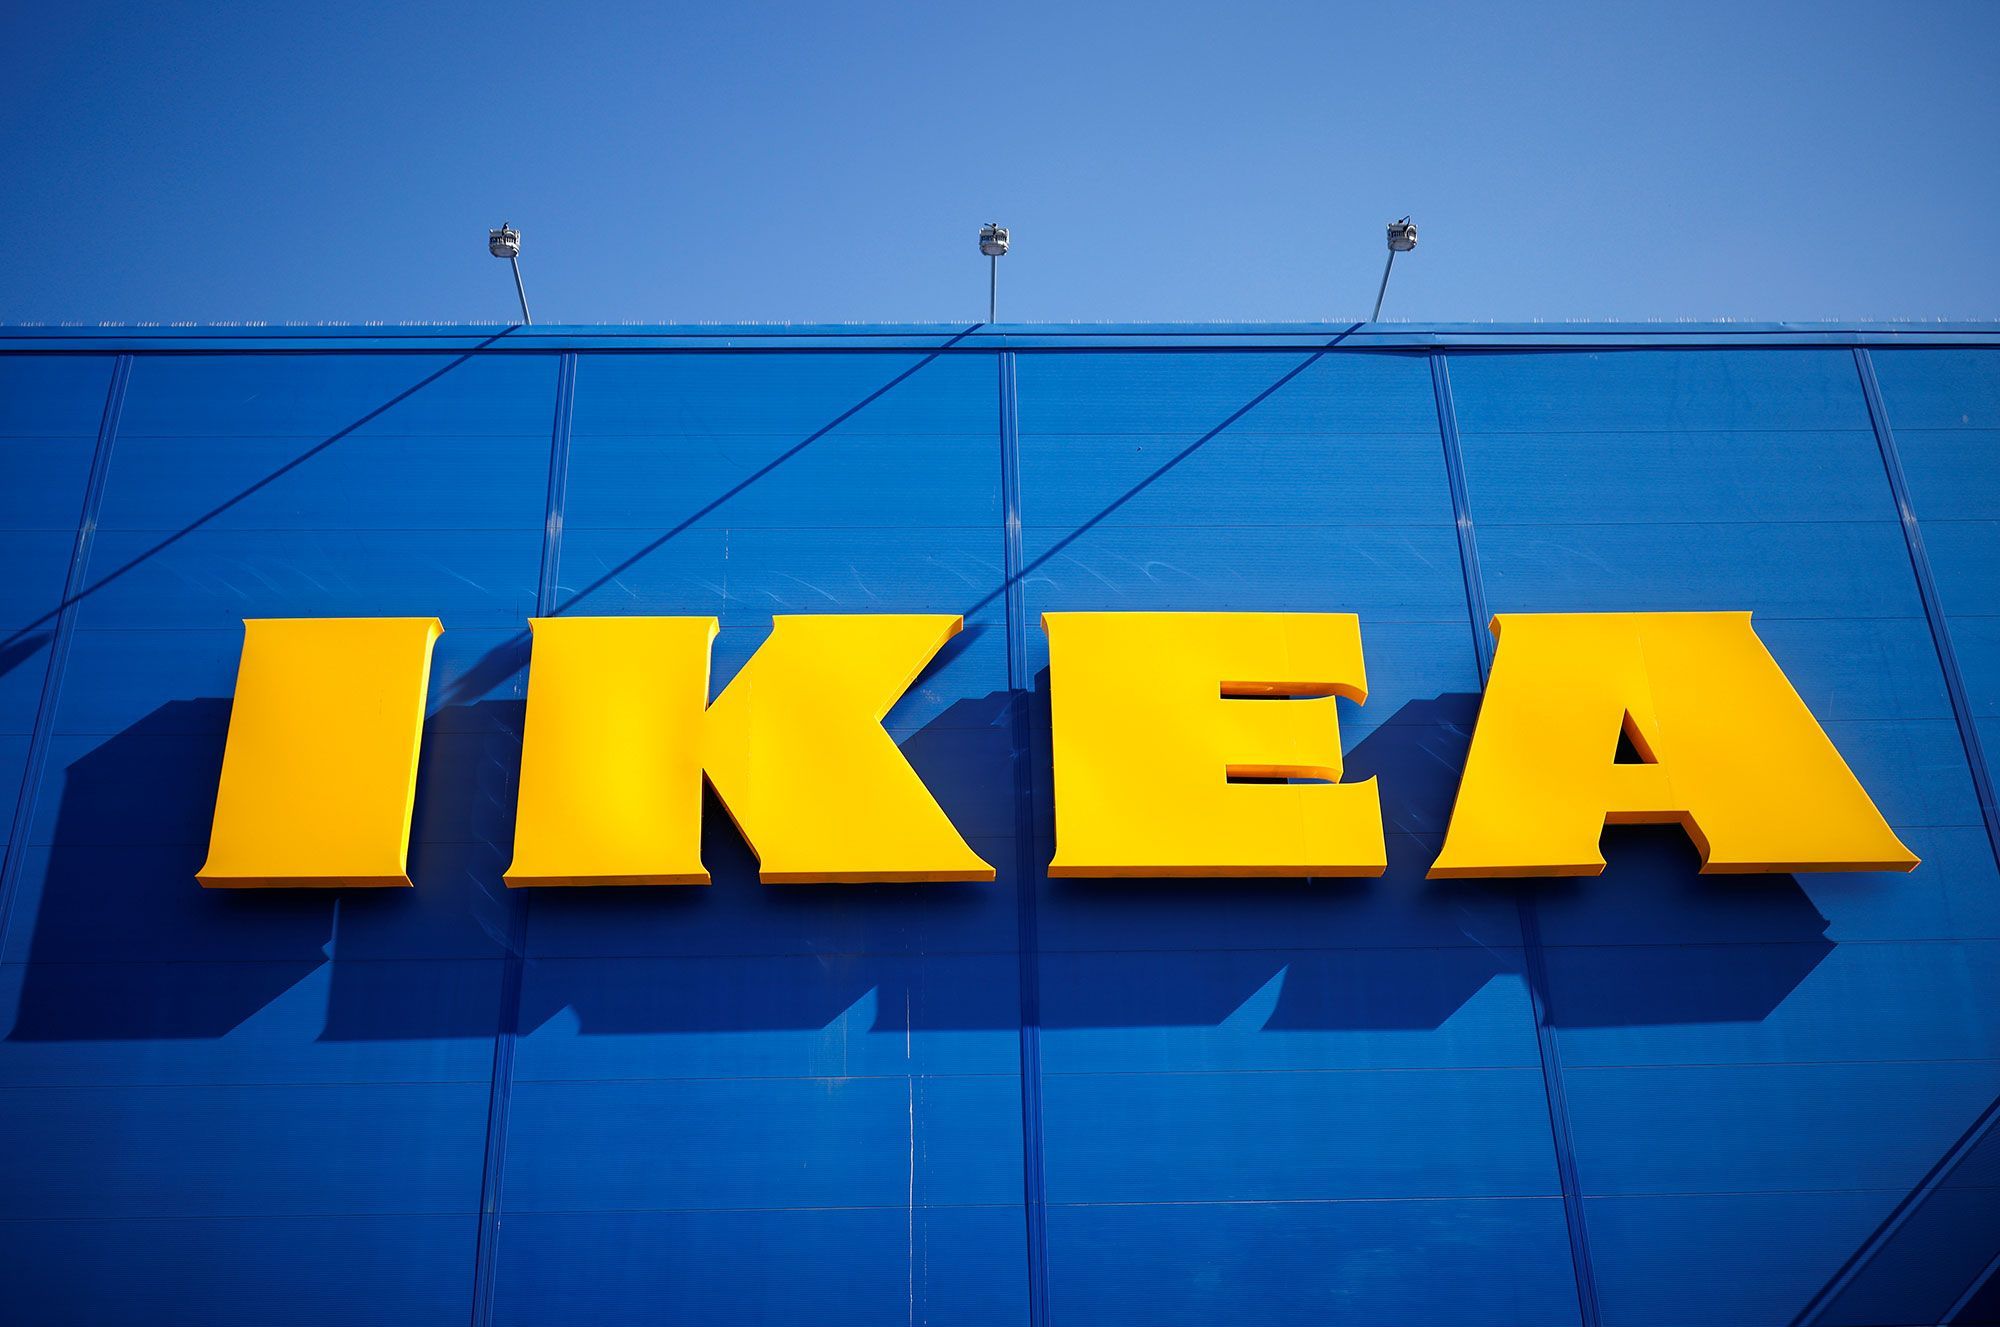 Ikea jugé pour avoir mis en place "système d'espionnage" de ses salariés